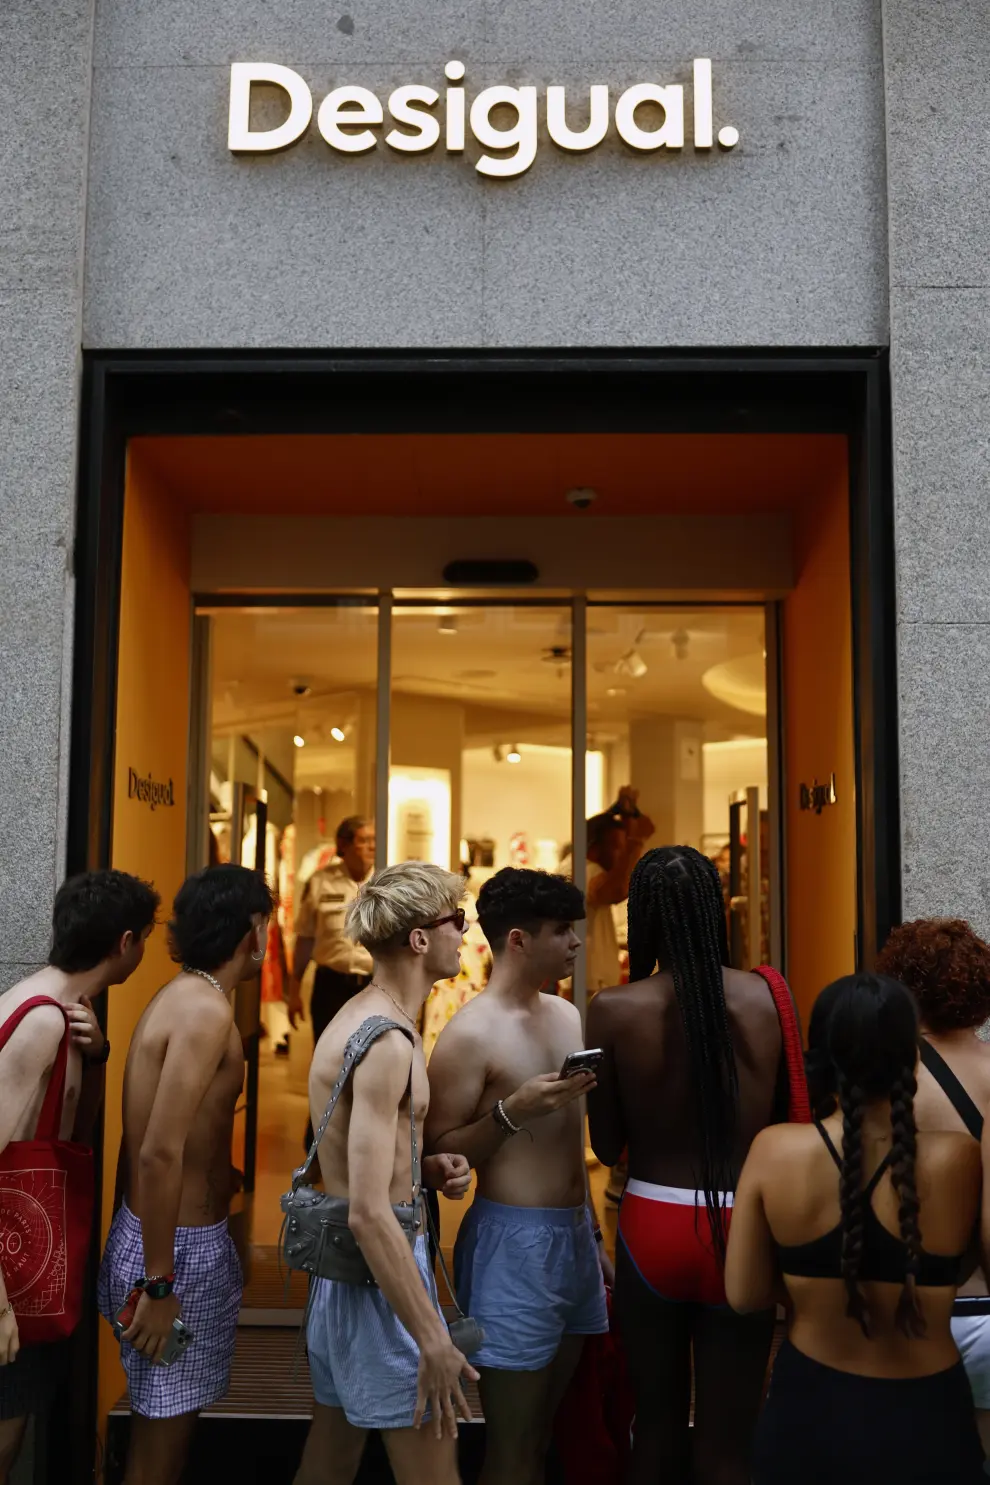 Cientos de jóvenes en ropa interior en una tienda de Desigual en Madrid